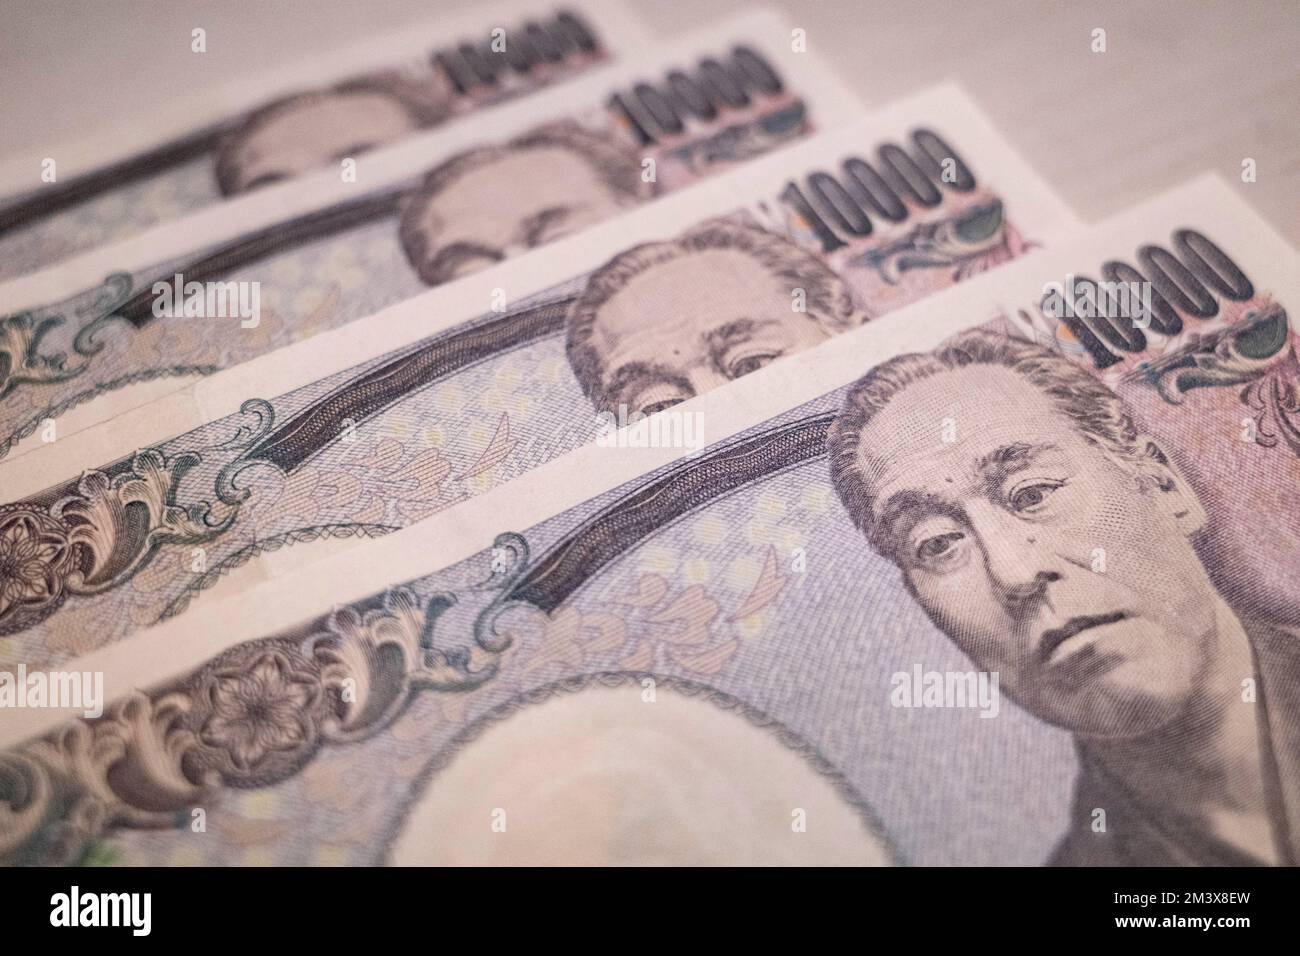 Tokyo, Giappone. 11th Dec, 2022. 10.000 banconote giapponesi Yen Â emesse dalla Banca del Giappone (Nippon Ginko) con Samurai e Meiji, educatore dell'era della riforma Fukuzawa Yukichi. Lo Yen giapponese è la terza valuta forex più scambiata al mondo e comunemente detenuta come valuta di riserva dopo il dollaro statunitense (USD $) e l'euro (EUR). Recentemente in mezzo ad un'elevata inflazione negli Stati Uniti, spingendo la Federal Reserve degli Stati Uniti ad aumentare i tassi di interesse, inviando il valore degli Stati Uniti Il dollaro alle stelle contro le valute estere ha svalutato lo Yen, causando inflazione a cascata in Giappone a causa della re del paese Foto Stock